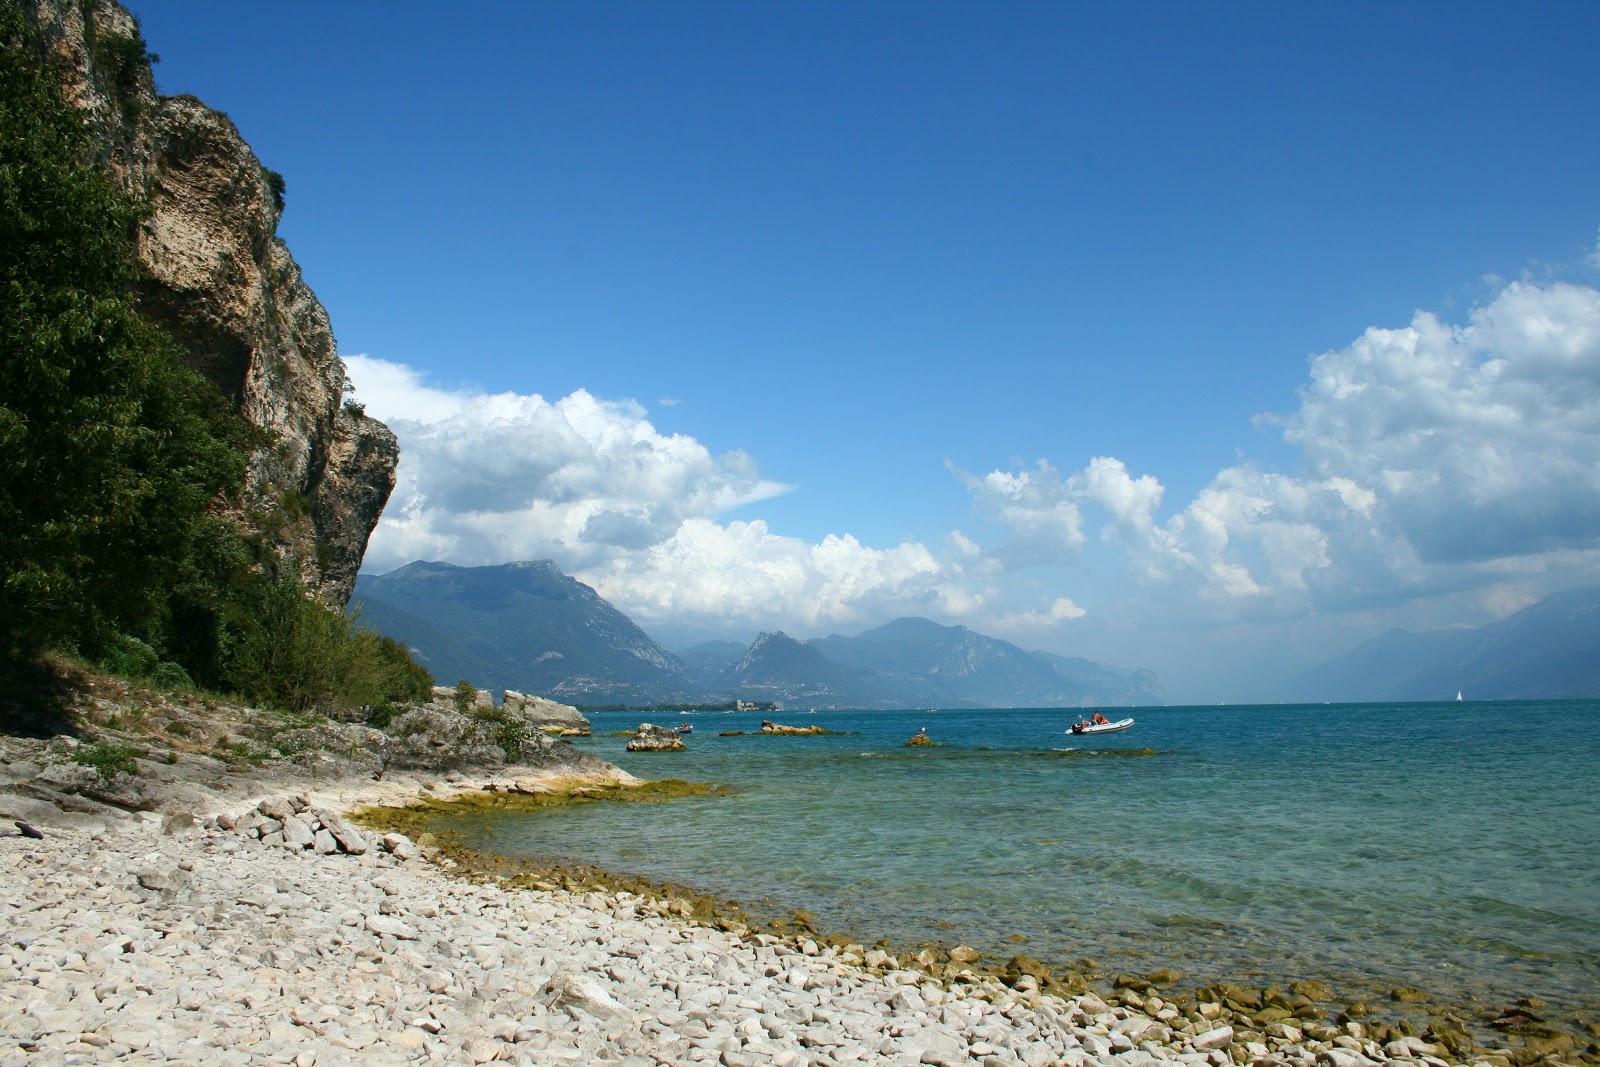 Photo of Spiaggia della Rocca with rocks cover surface